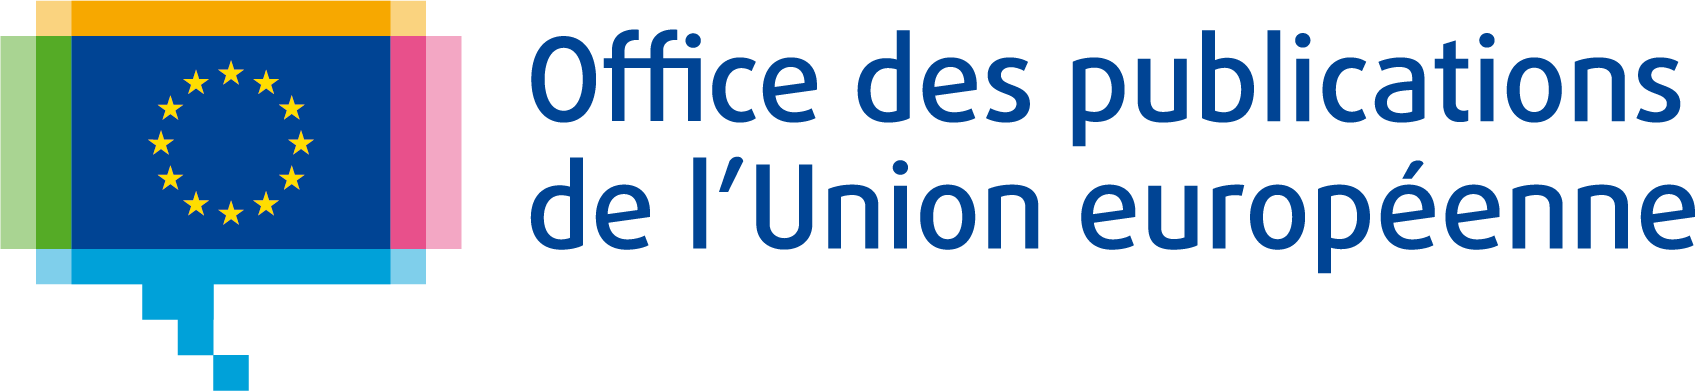 Office des publications de l’Union européenne